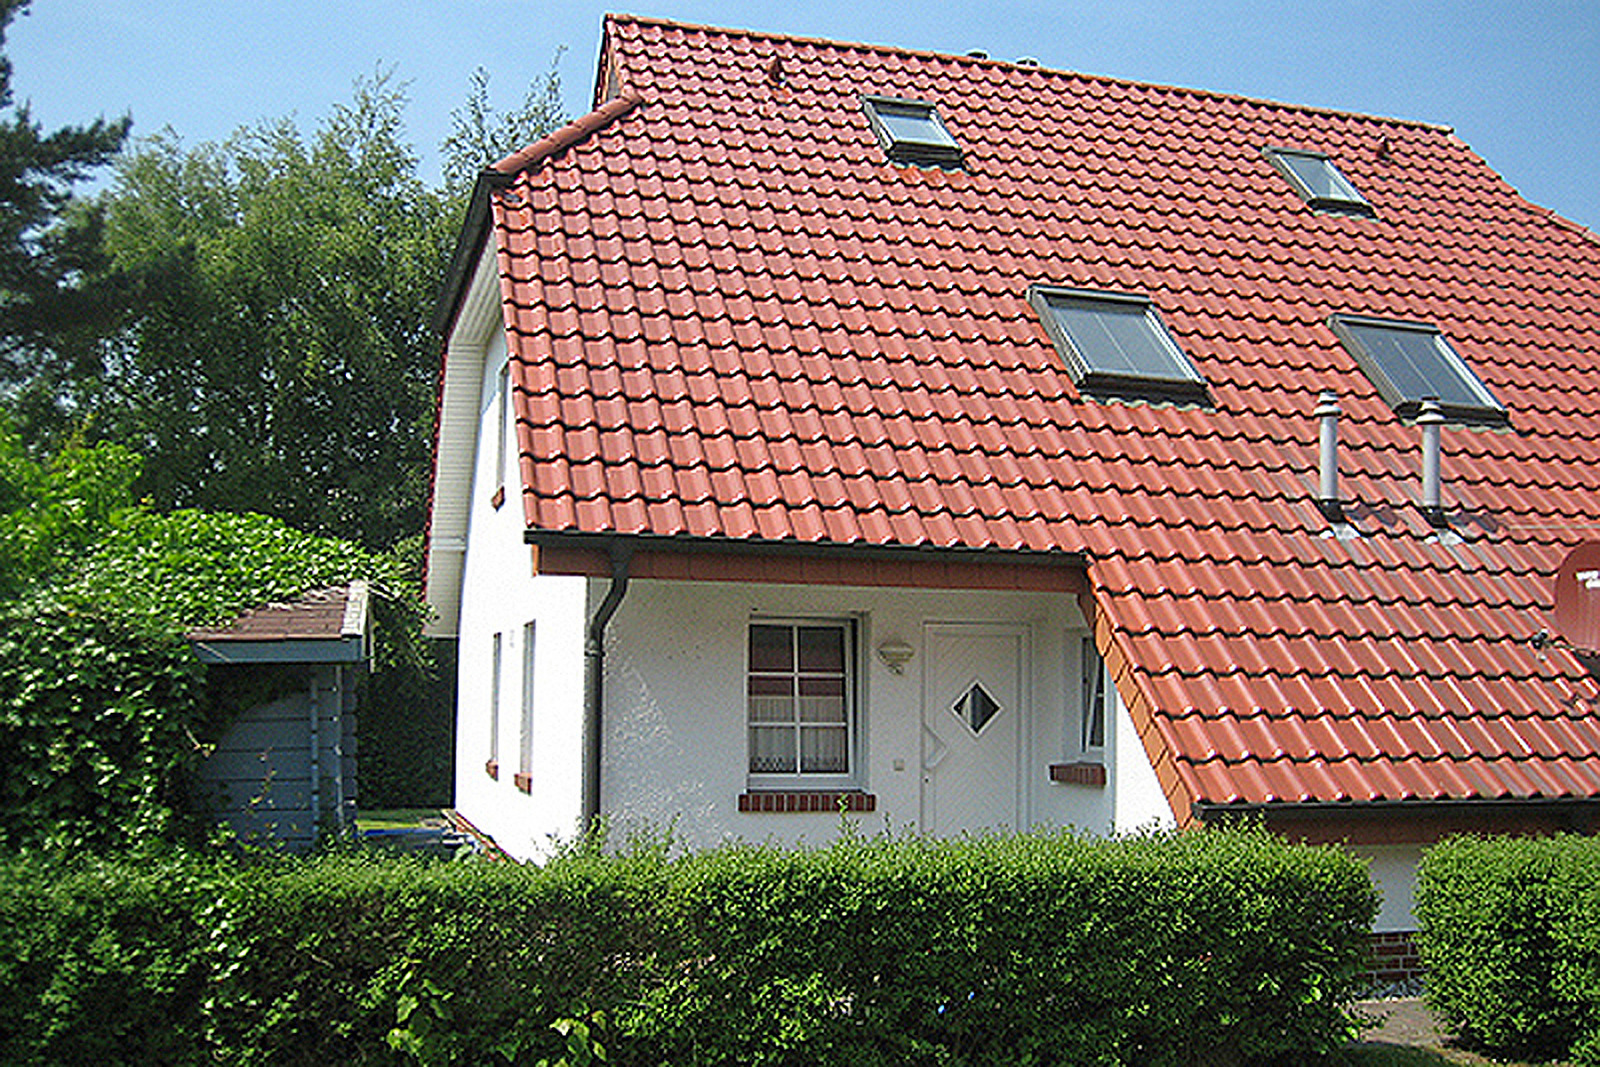 54 Grad Nord Ferienhaus in Mecklenburg Vorpommern